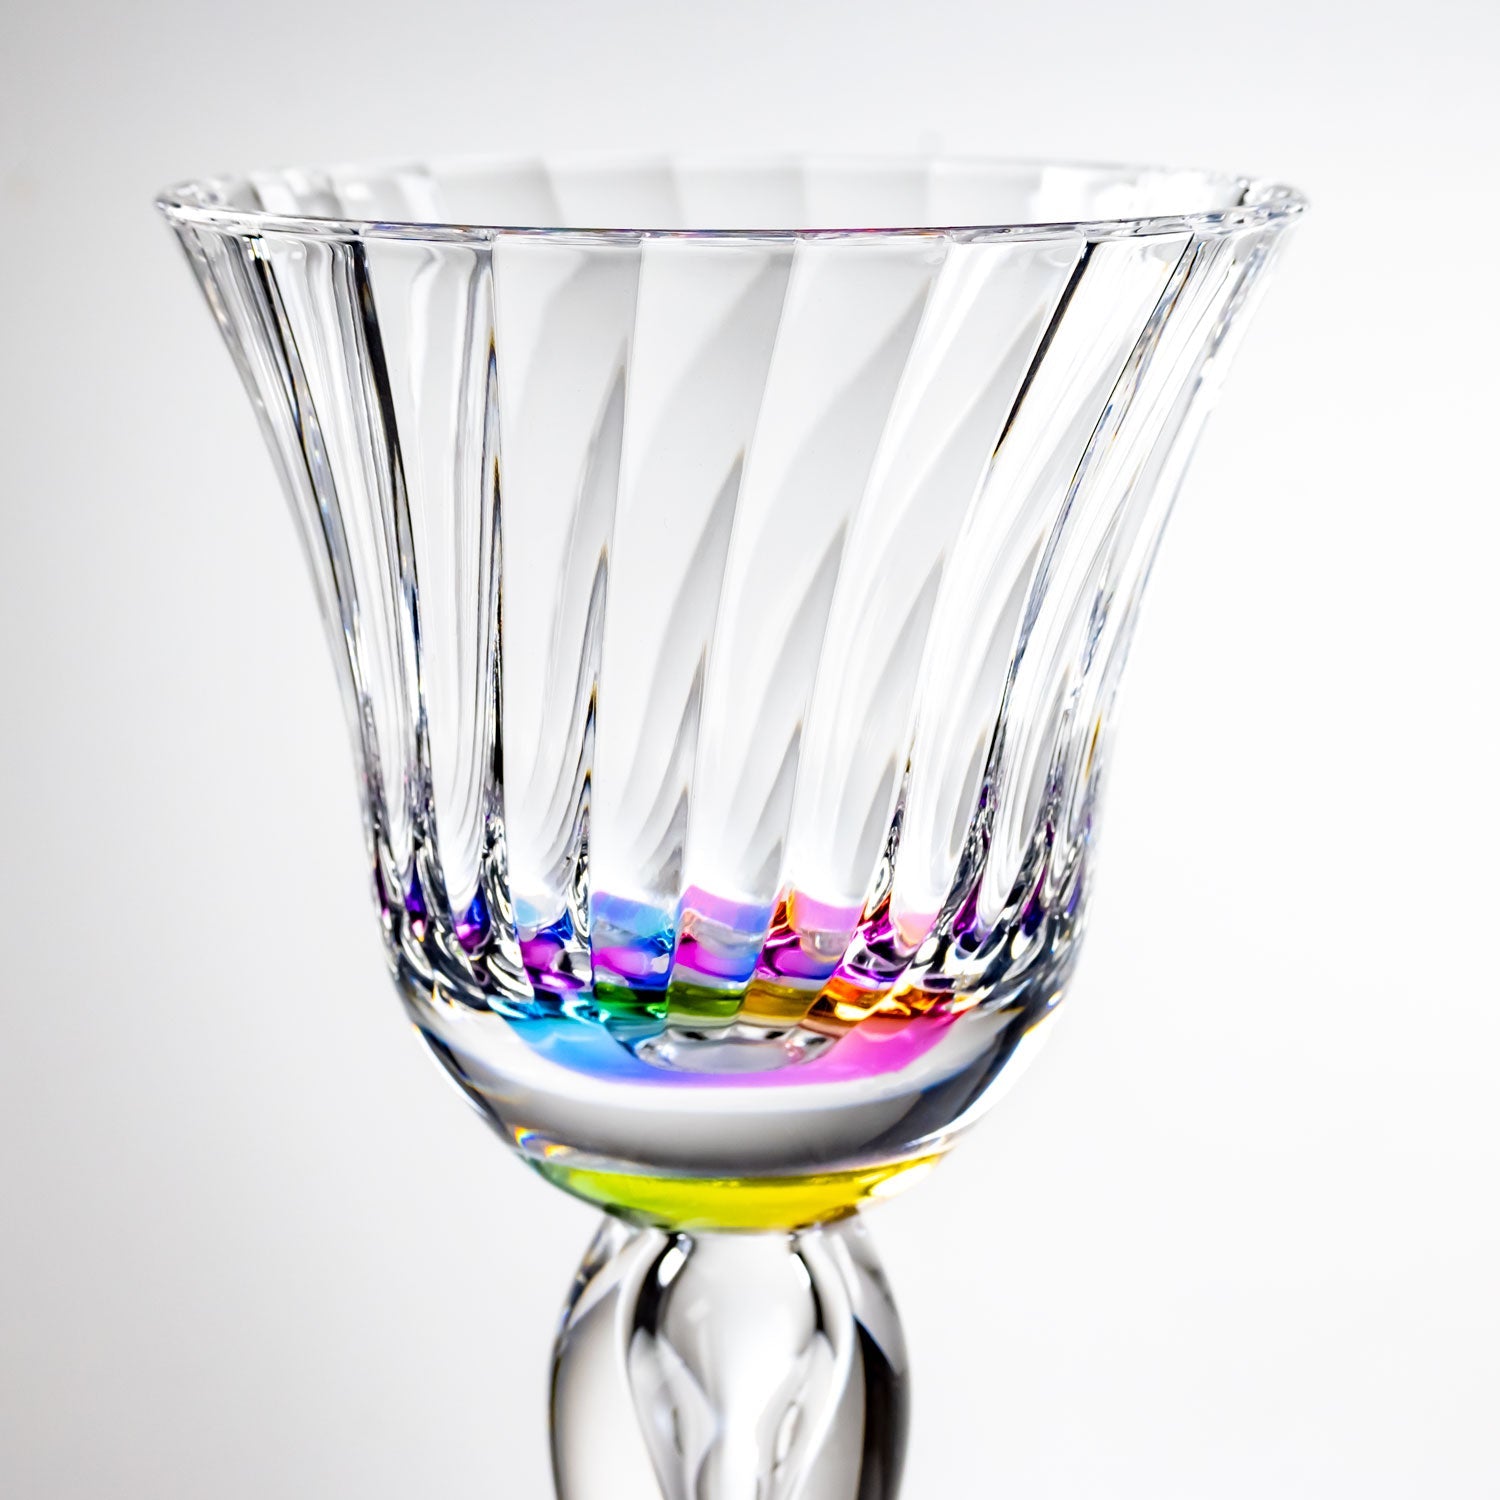 Merritt Designs Venezia Rainbow 10oz Acrylic Wine Stemware